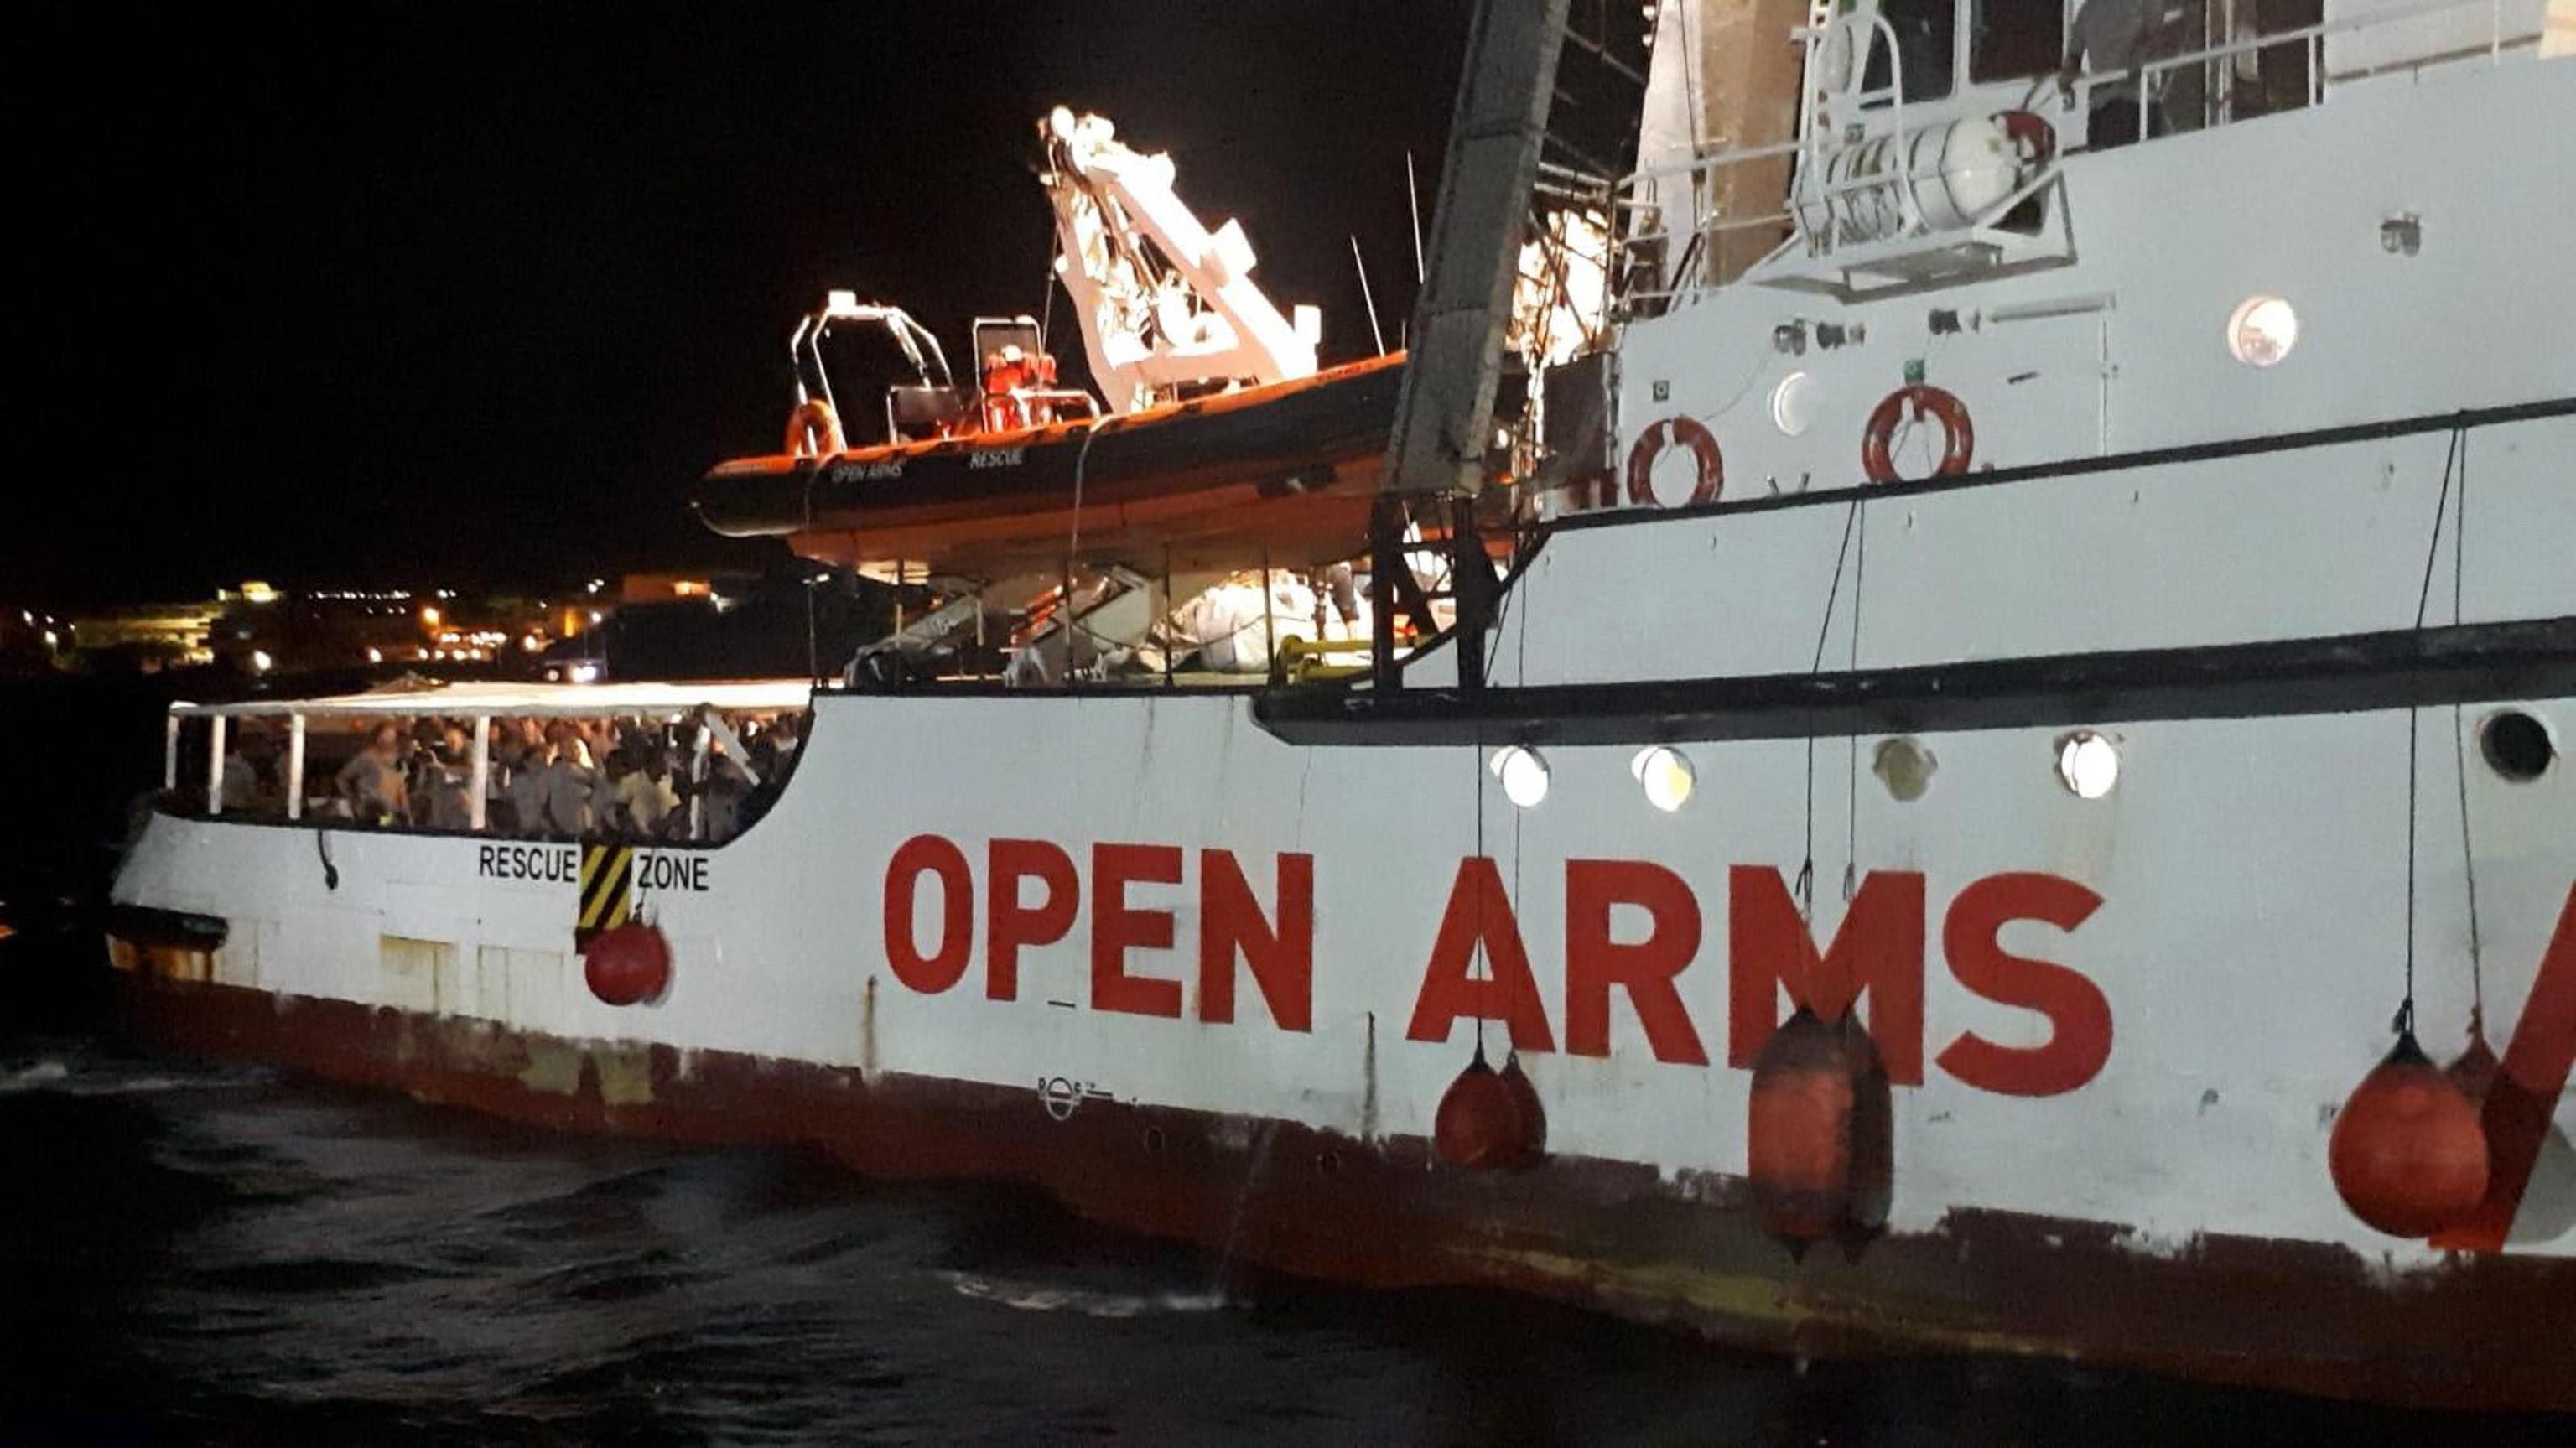 Denuncien catalanofòbia a RTVE en parlar de l'Open Arms: "El buque catalán"